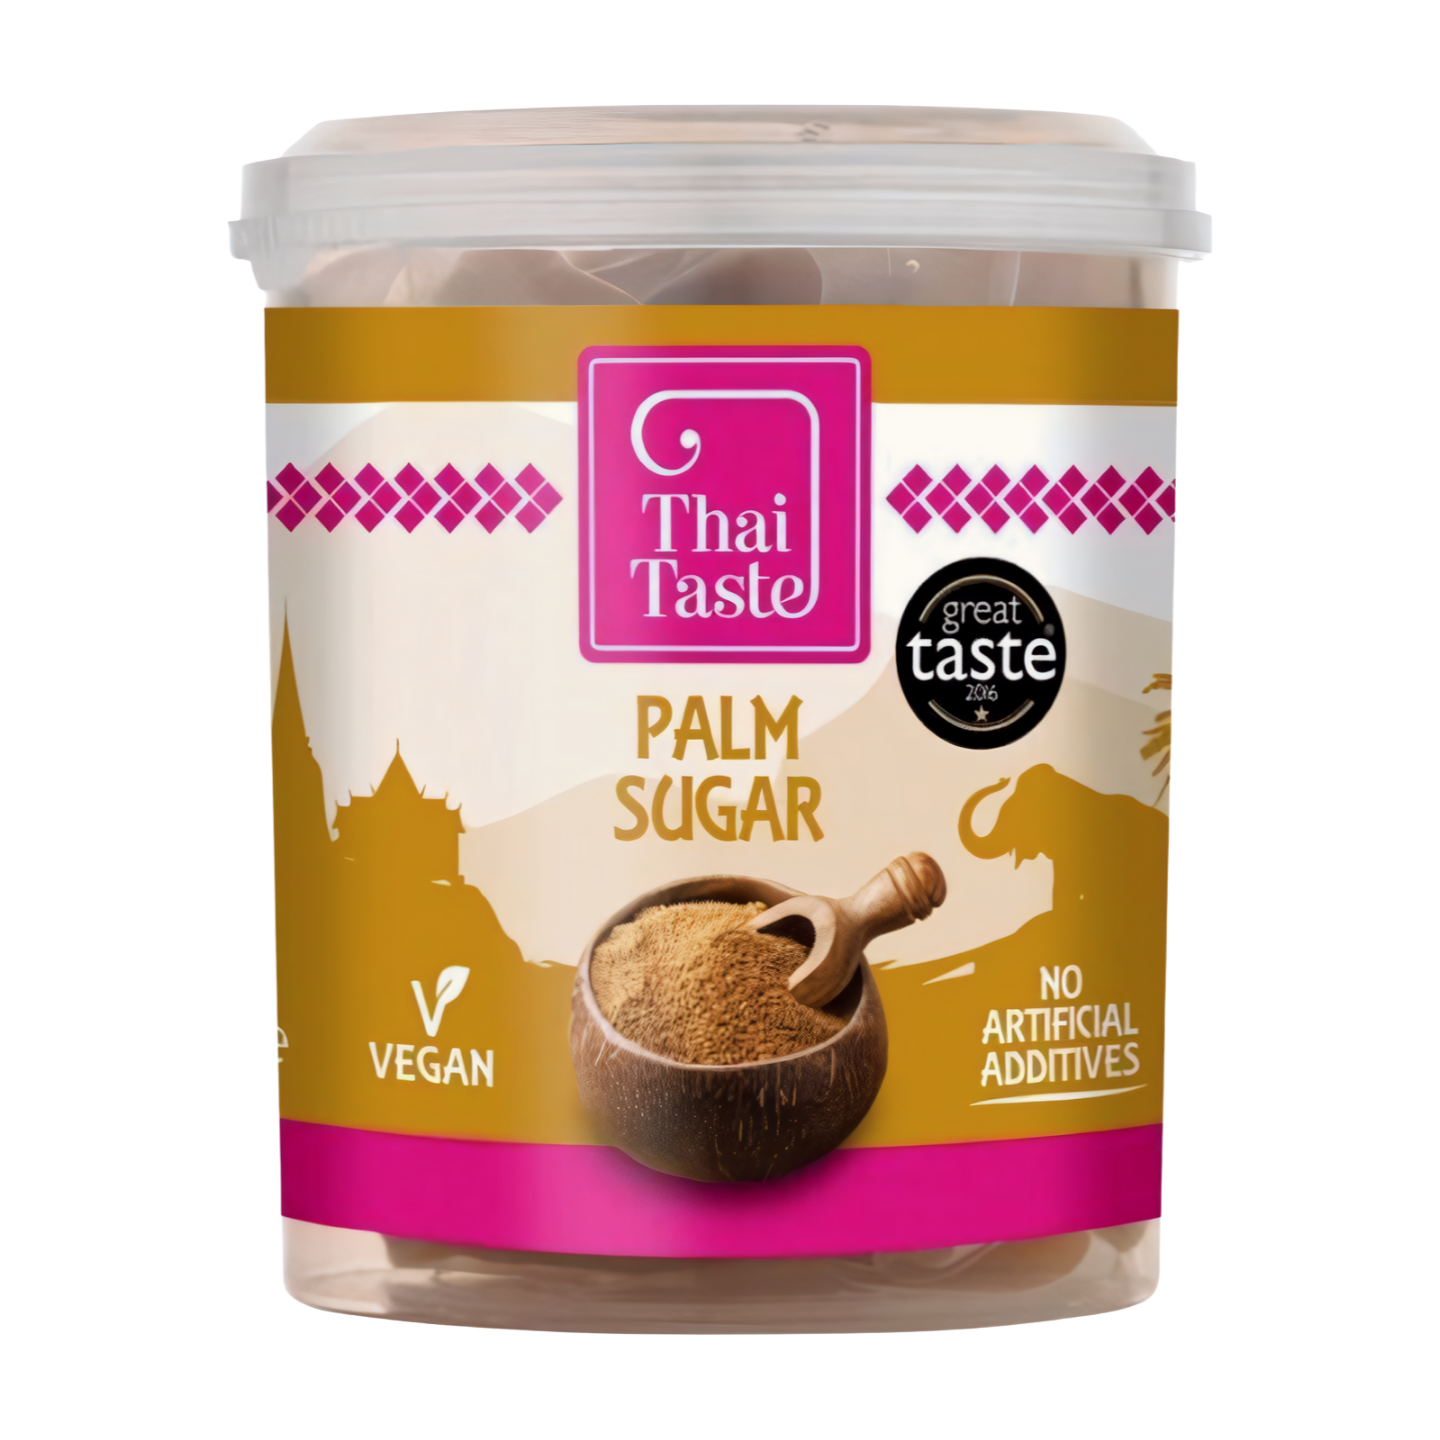 Thai Taste Natural Palm Sugar (6x200g)